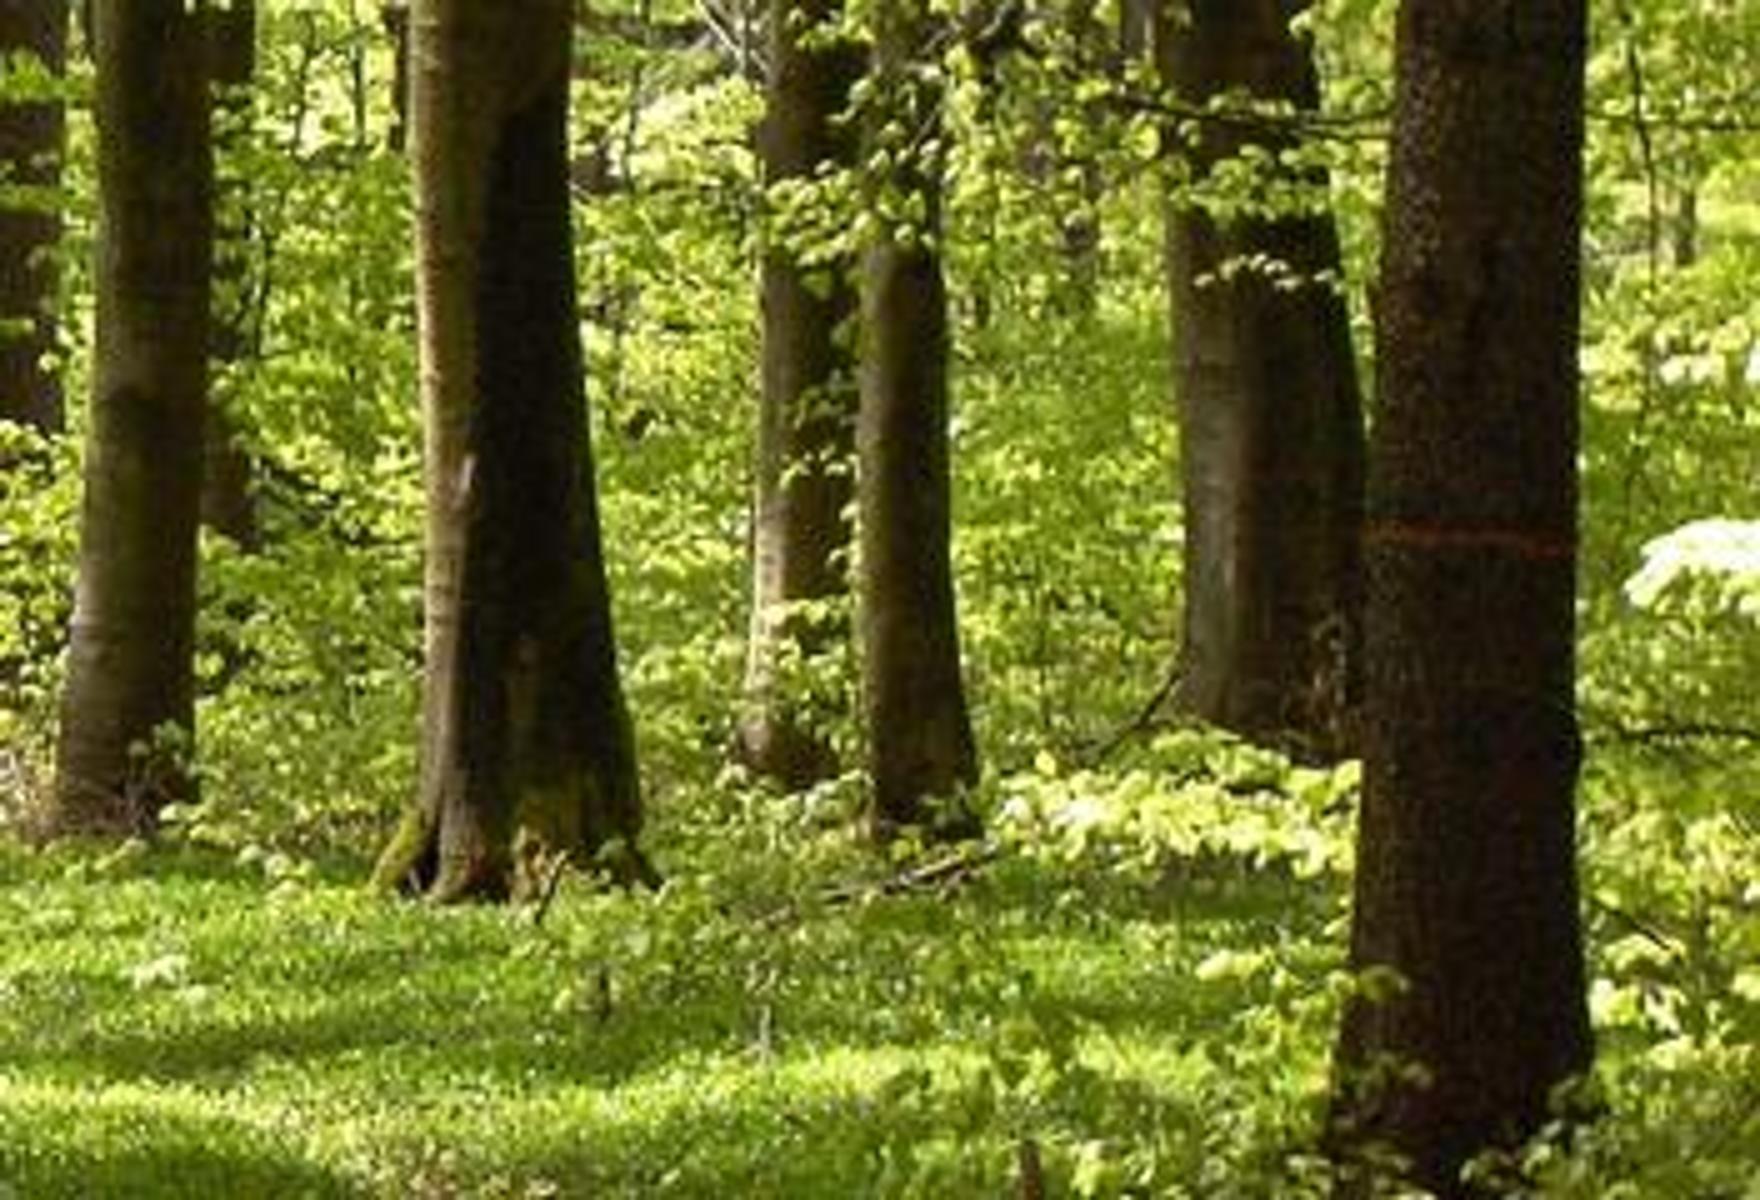 Wenn wir einen Waldspaziergang machen, werden wir es wohl am ehesten erfahren: Die Stille und Ruhe, die wir dort vorfinden, kann uns neue Kraft und Ausgeglichenheit verleihen. Bäume sind mehr als nur Pflanzen, sie sind seit Urzeiten Sinnbild des Lebendigen und wegweisend für uns Menschen. Wir geh...